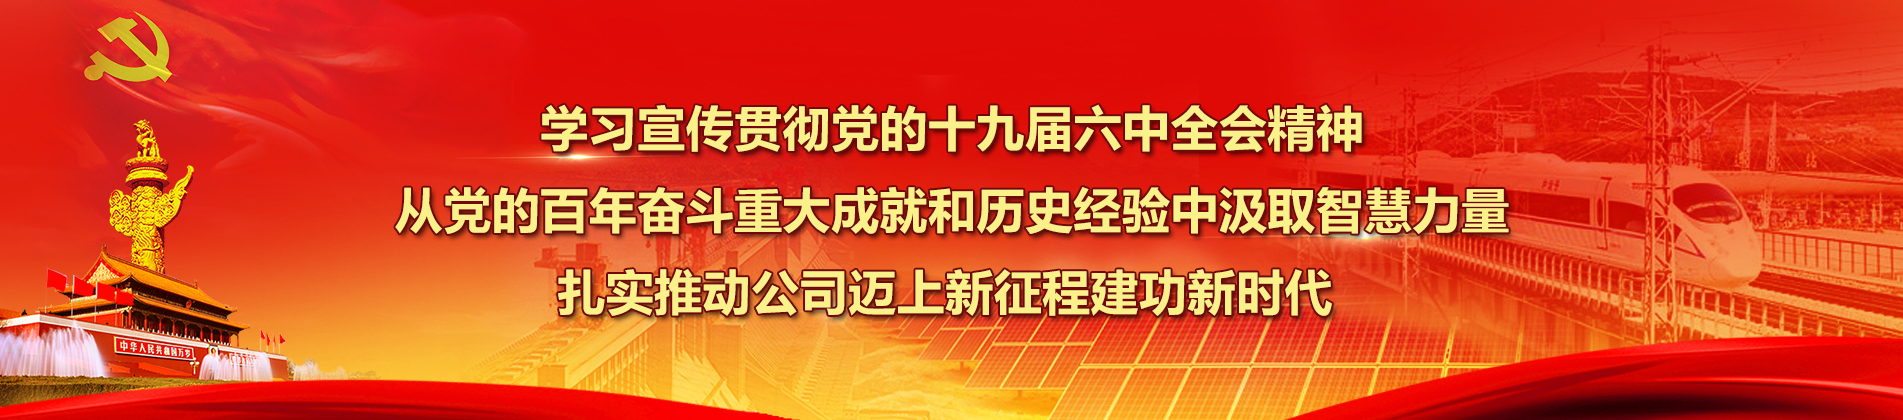 中國電建集團武漢重工裝備有限公司